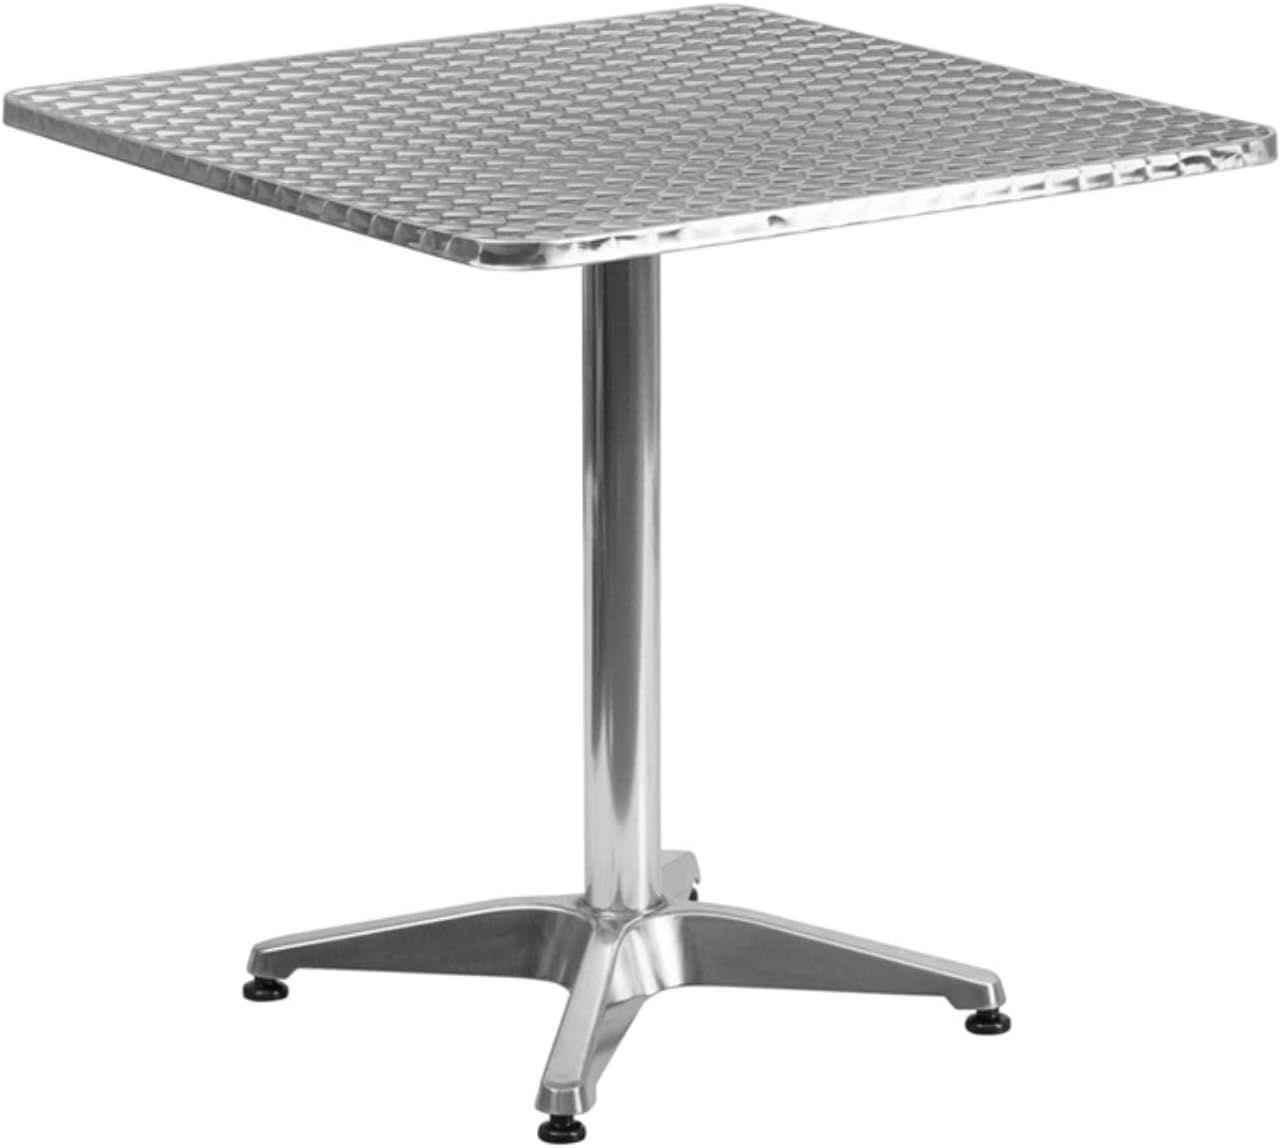 (BLUE) 27.5'' Square Aluminum Indoor-Outdoor Table